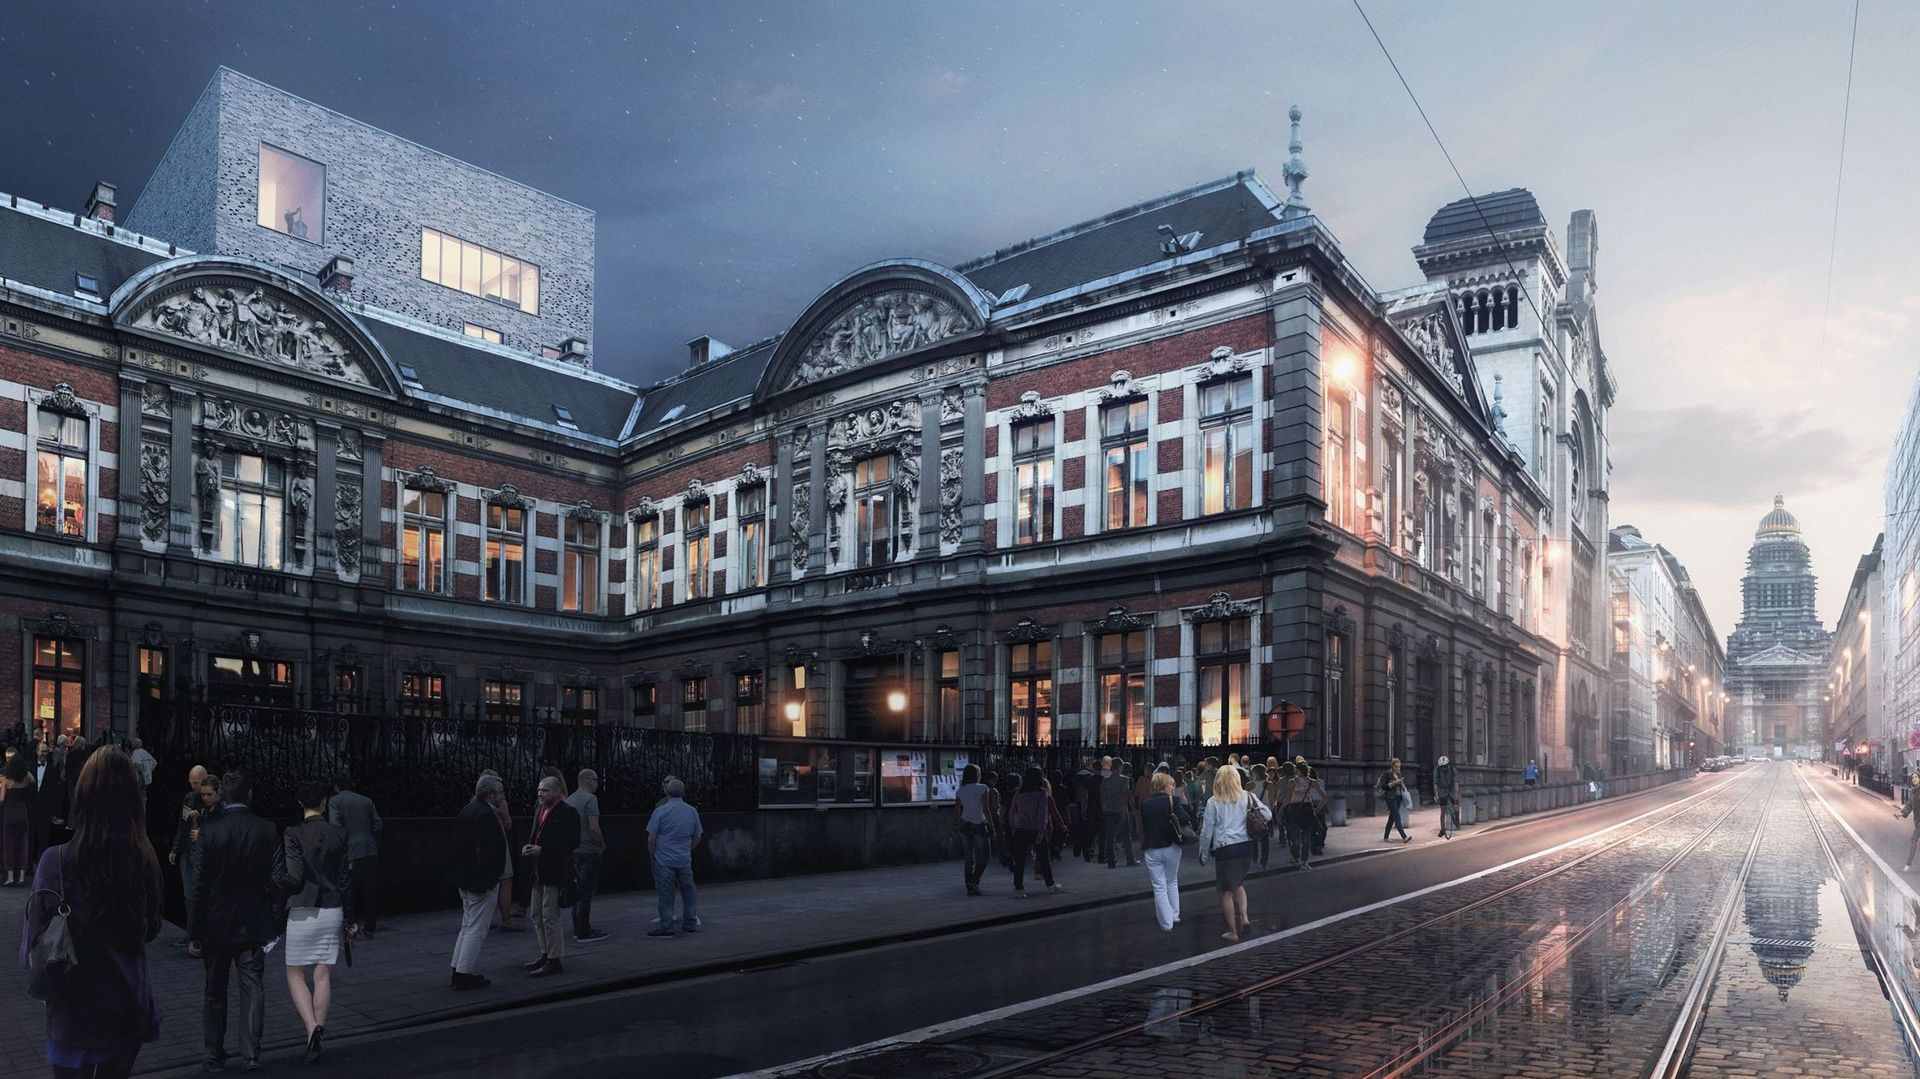 Les esquisses du projet de restauration du Conservatoire royal de Bruxelles 